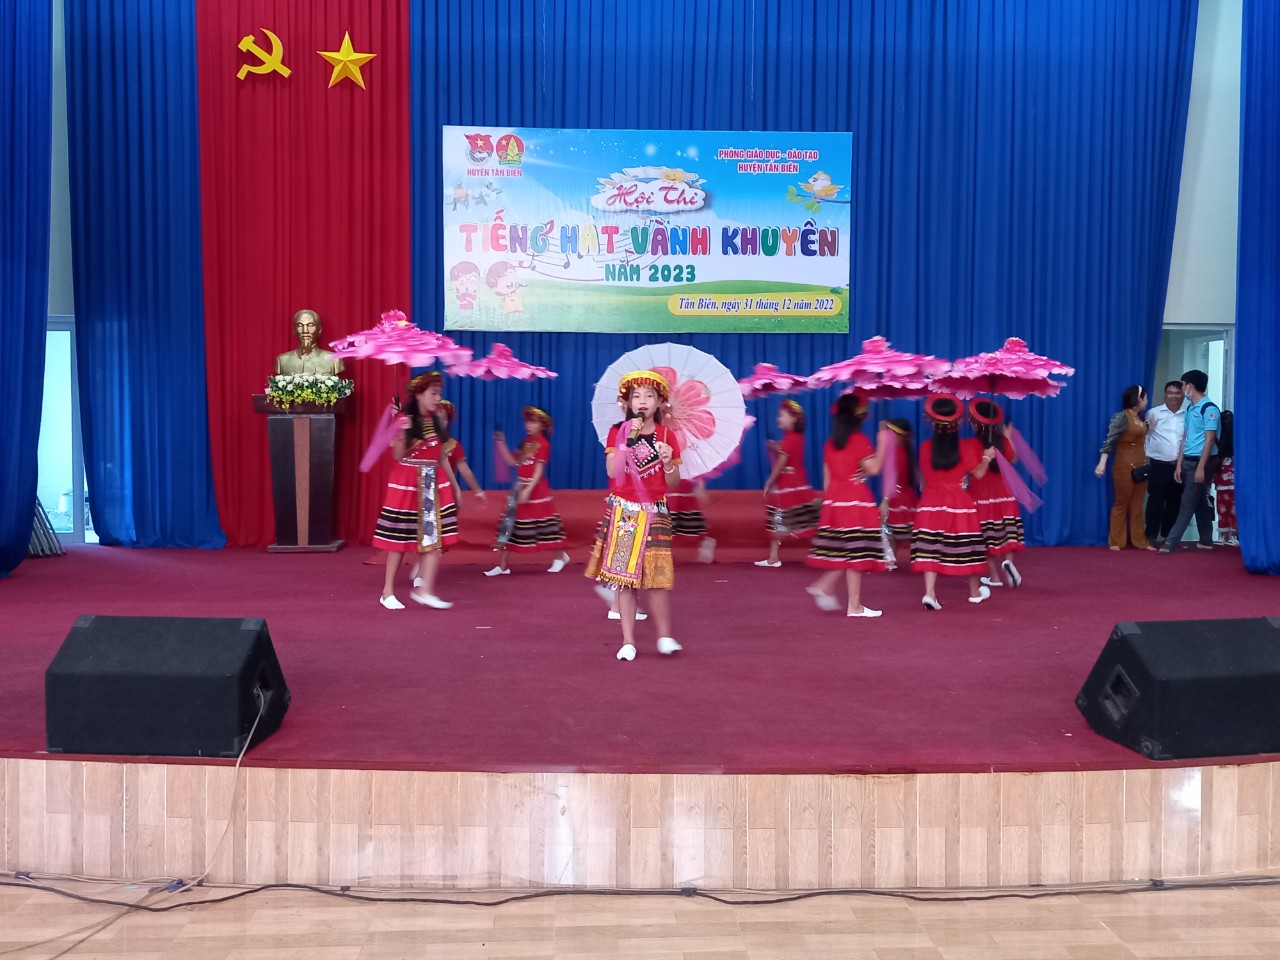 Tân Biên Sôi nổi hội thi Tiếng hát Vành Khuyên năm học 2022 - 2023